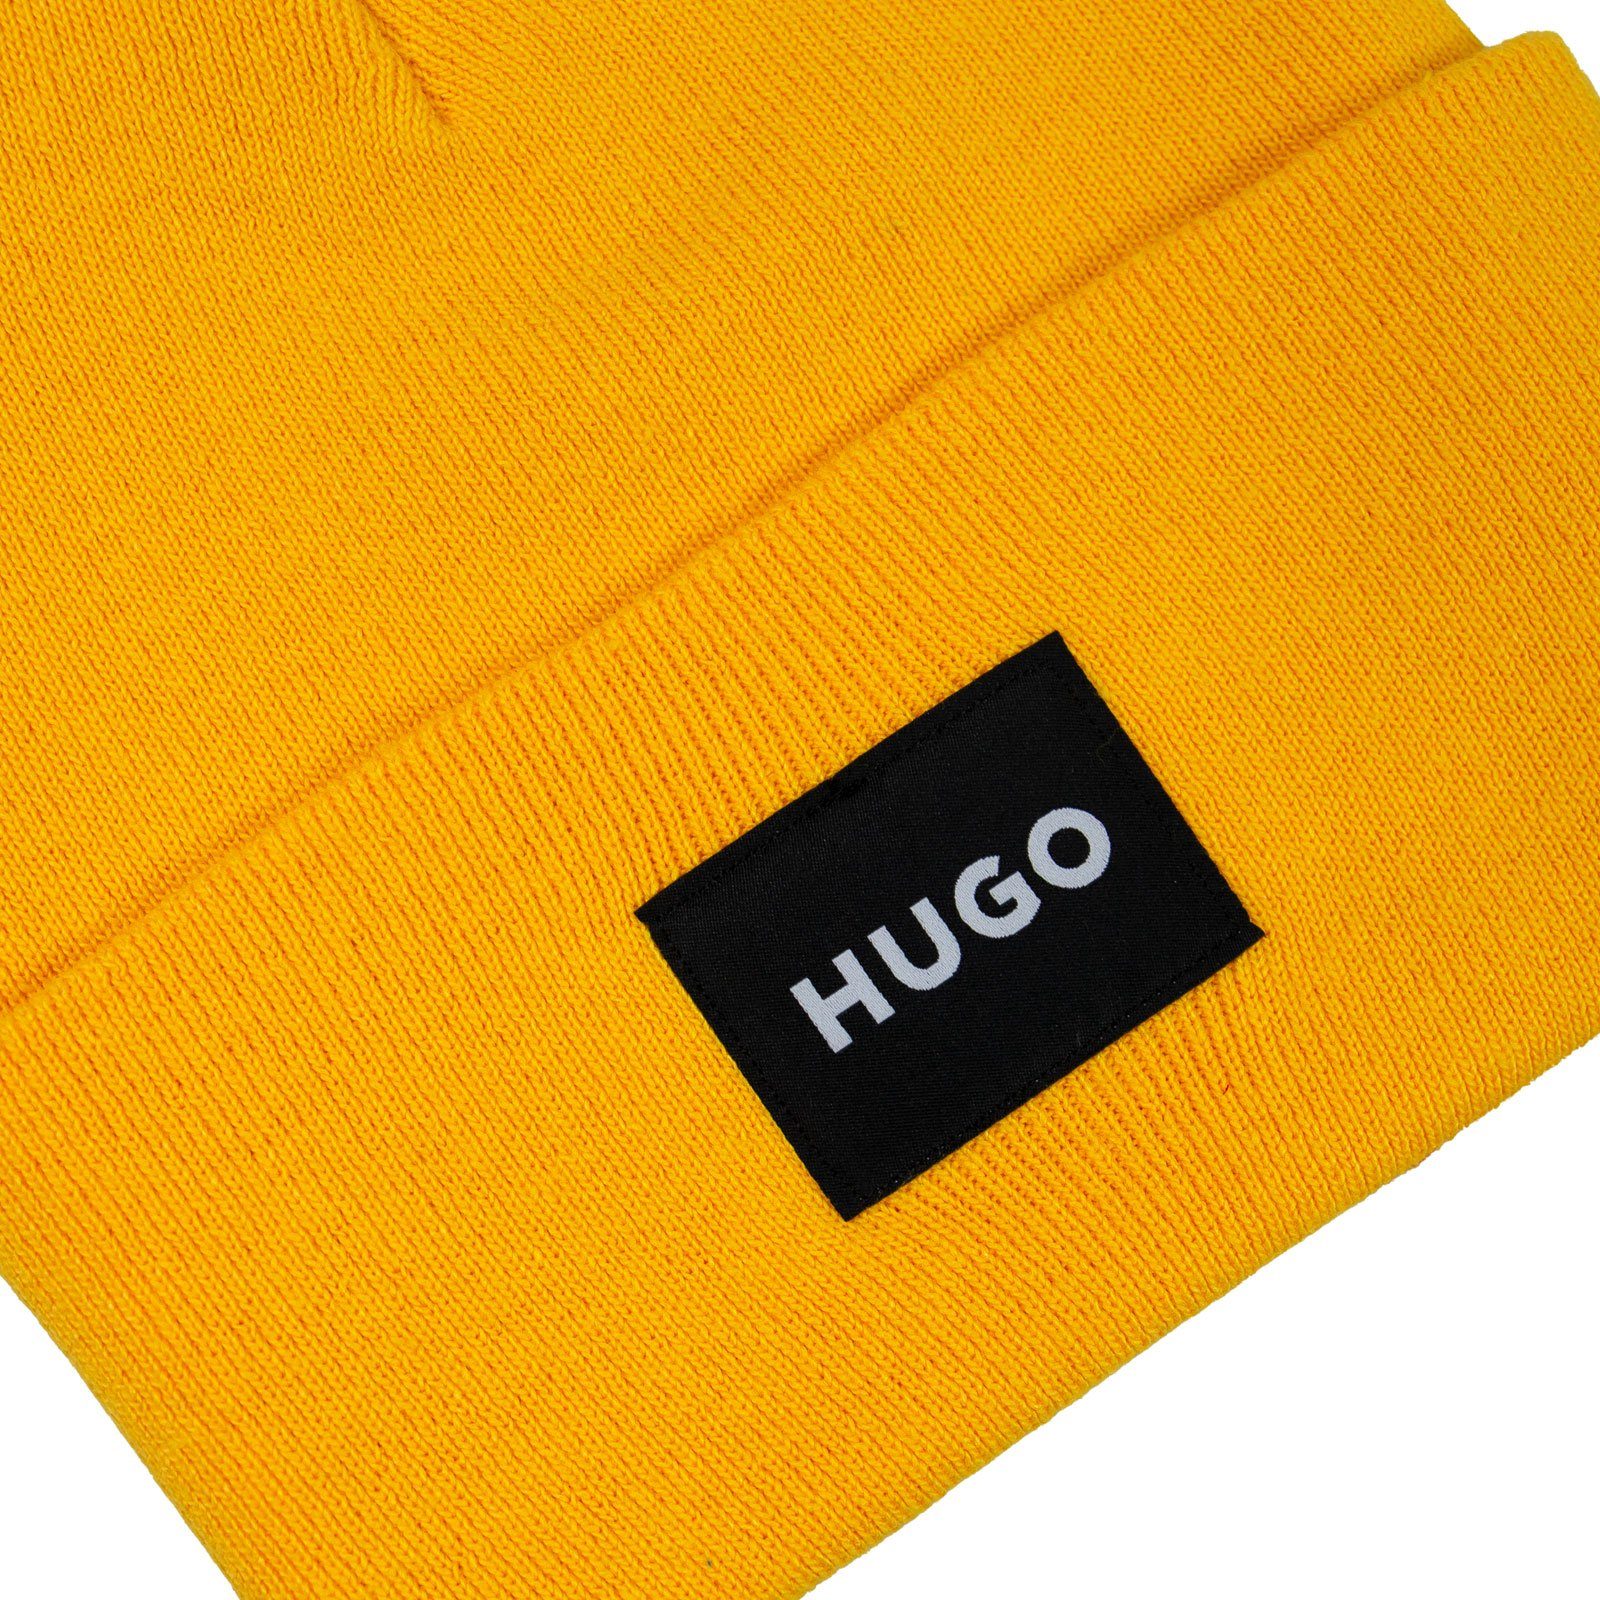 aufgenähtem Xevon Strickmütze mit Logo gelb HUGO